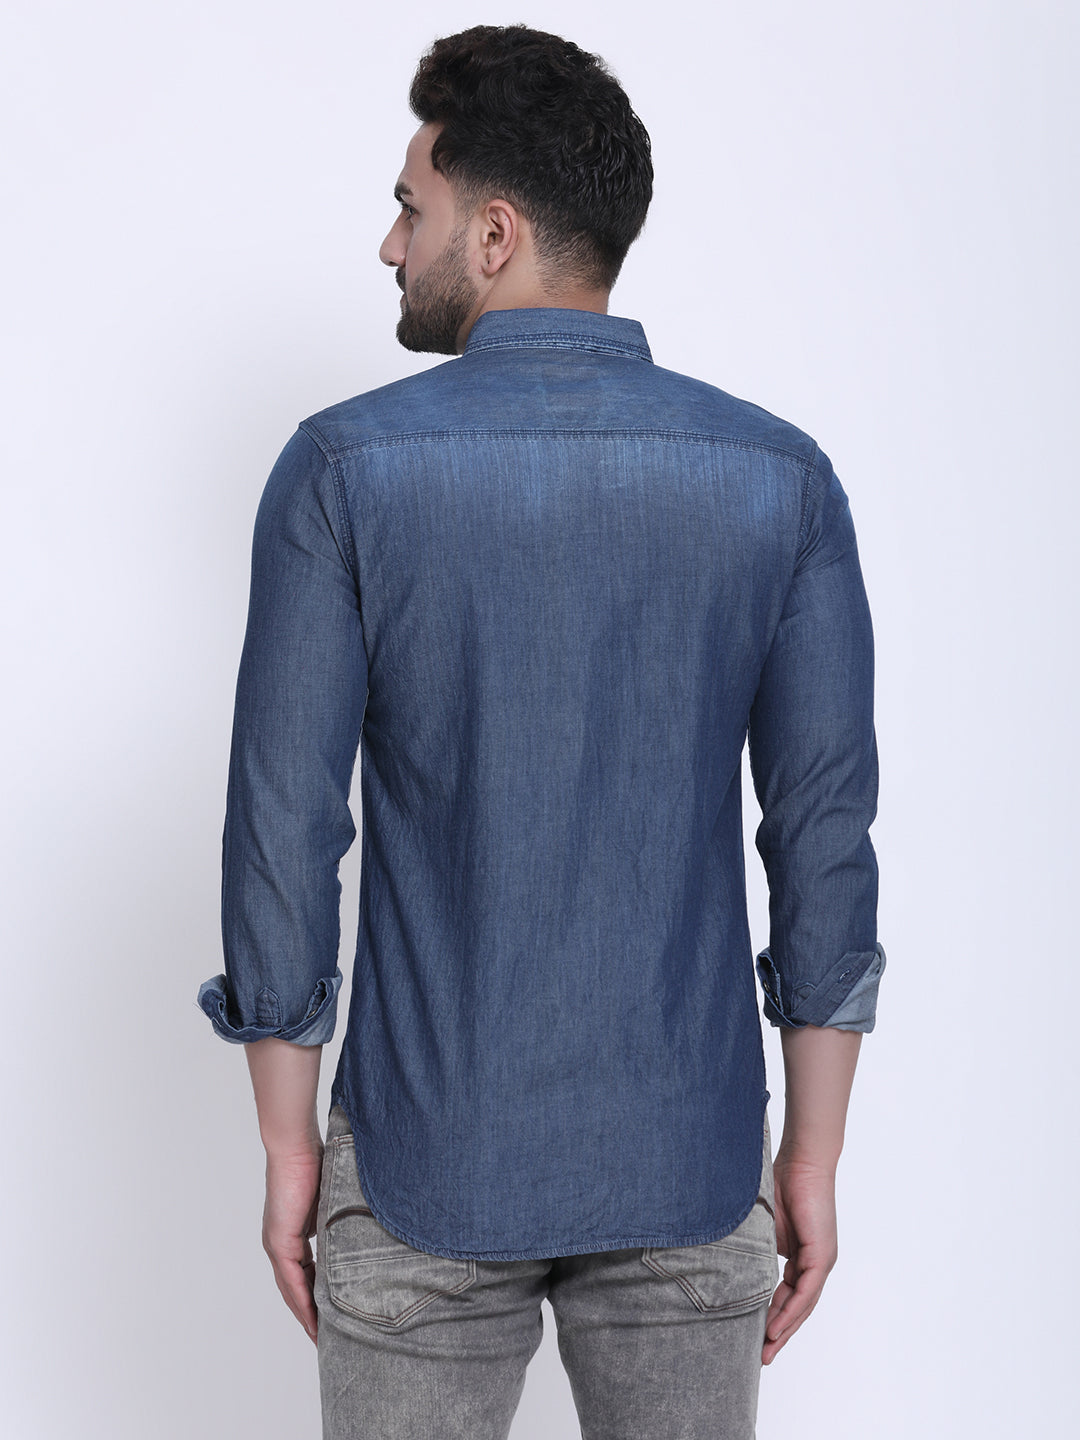 Saint Laurent - Push-Studded Faded-Denim Shirt - Mens - Blue for Men